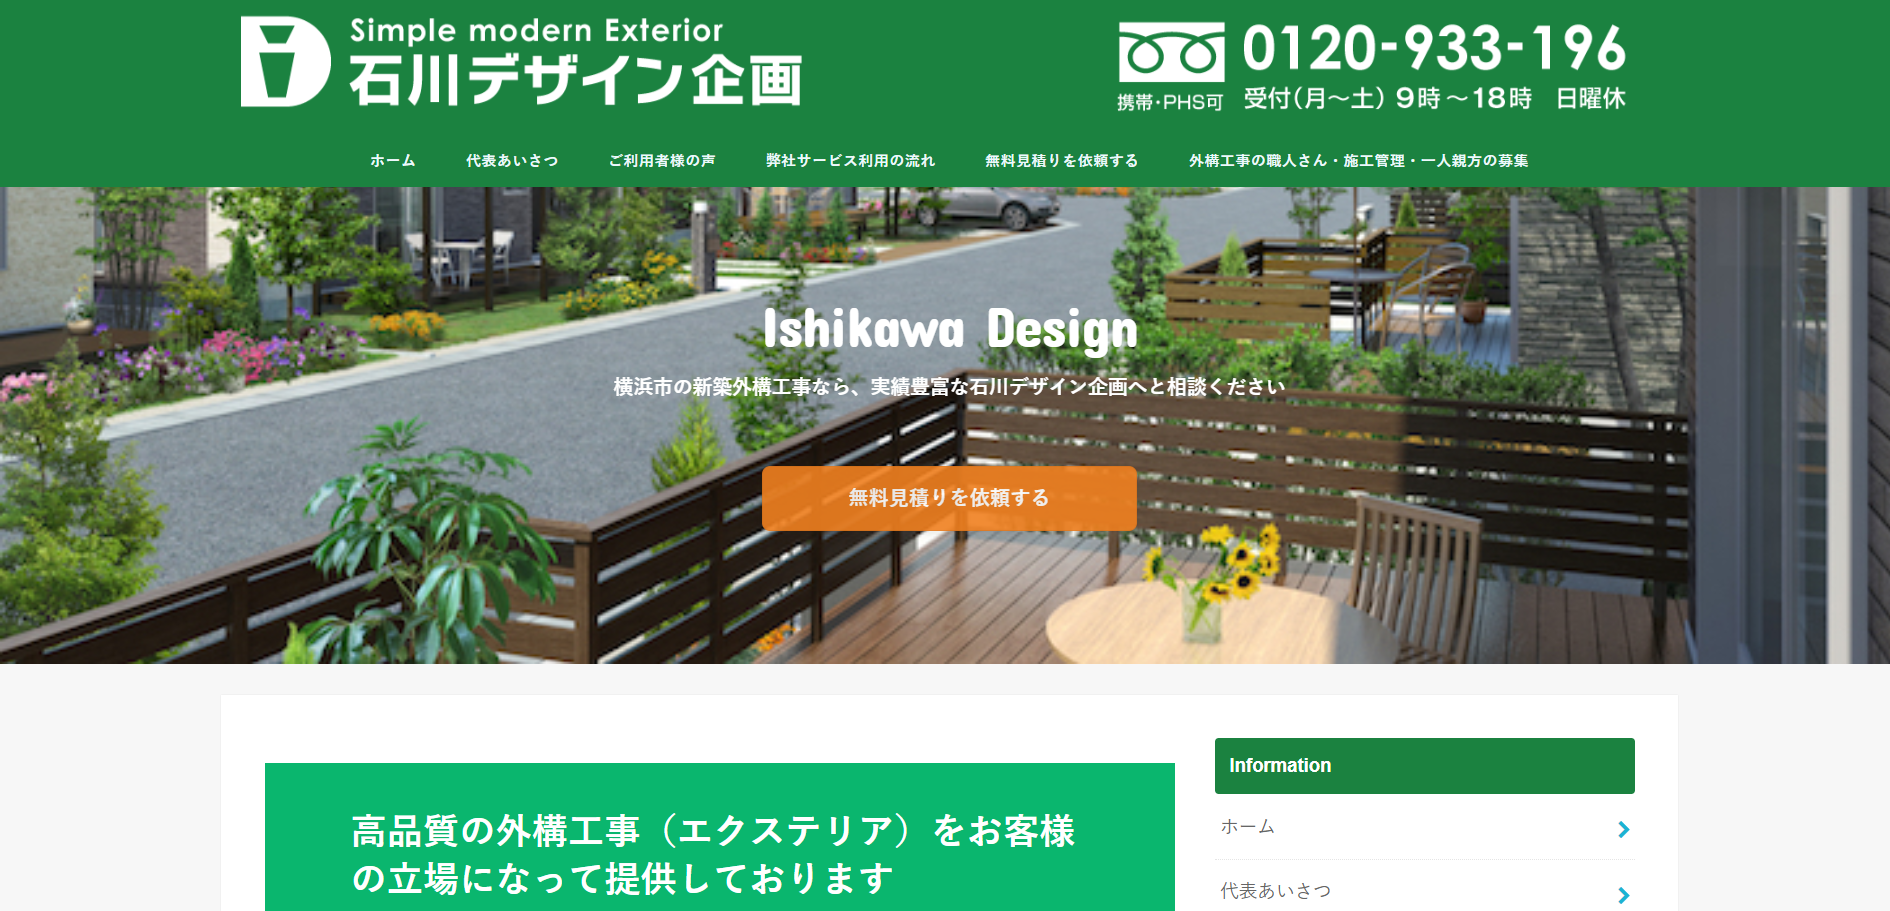 石川デザイン企画